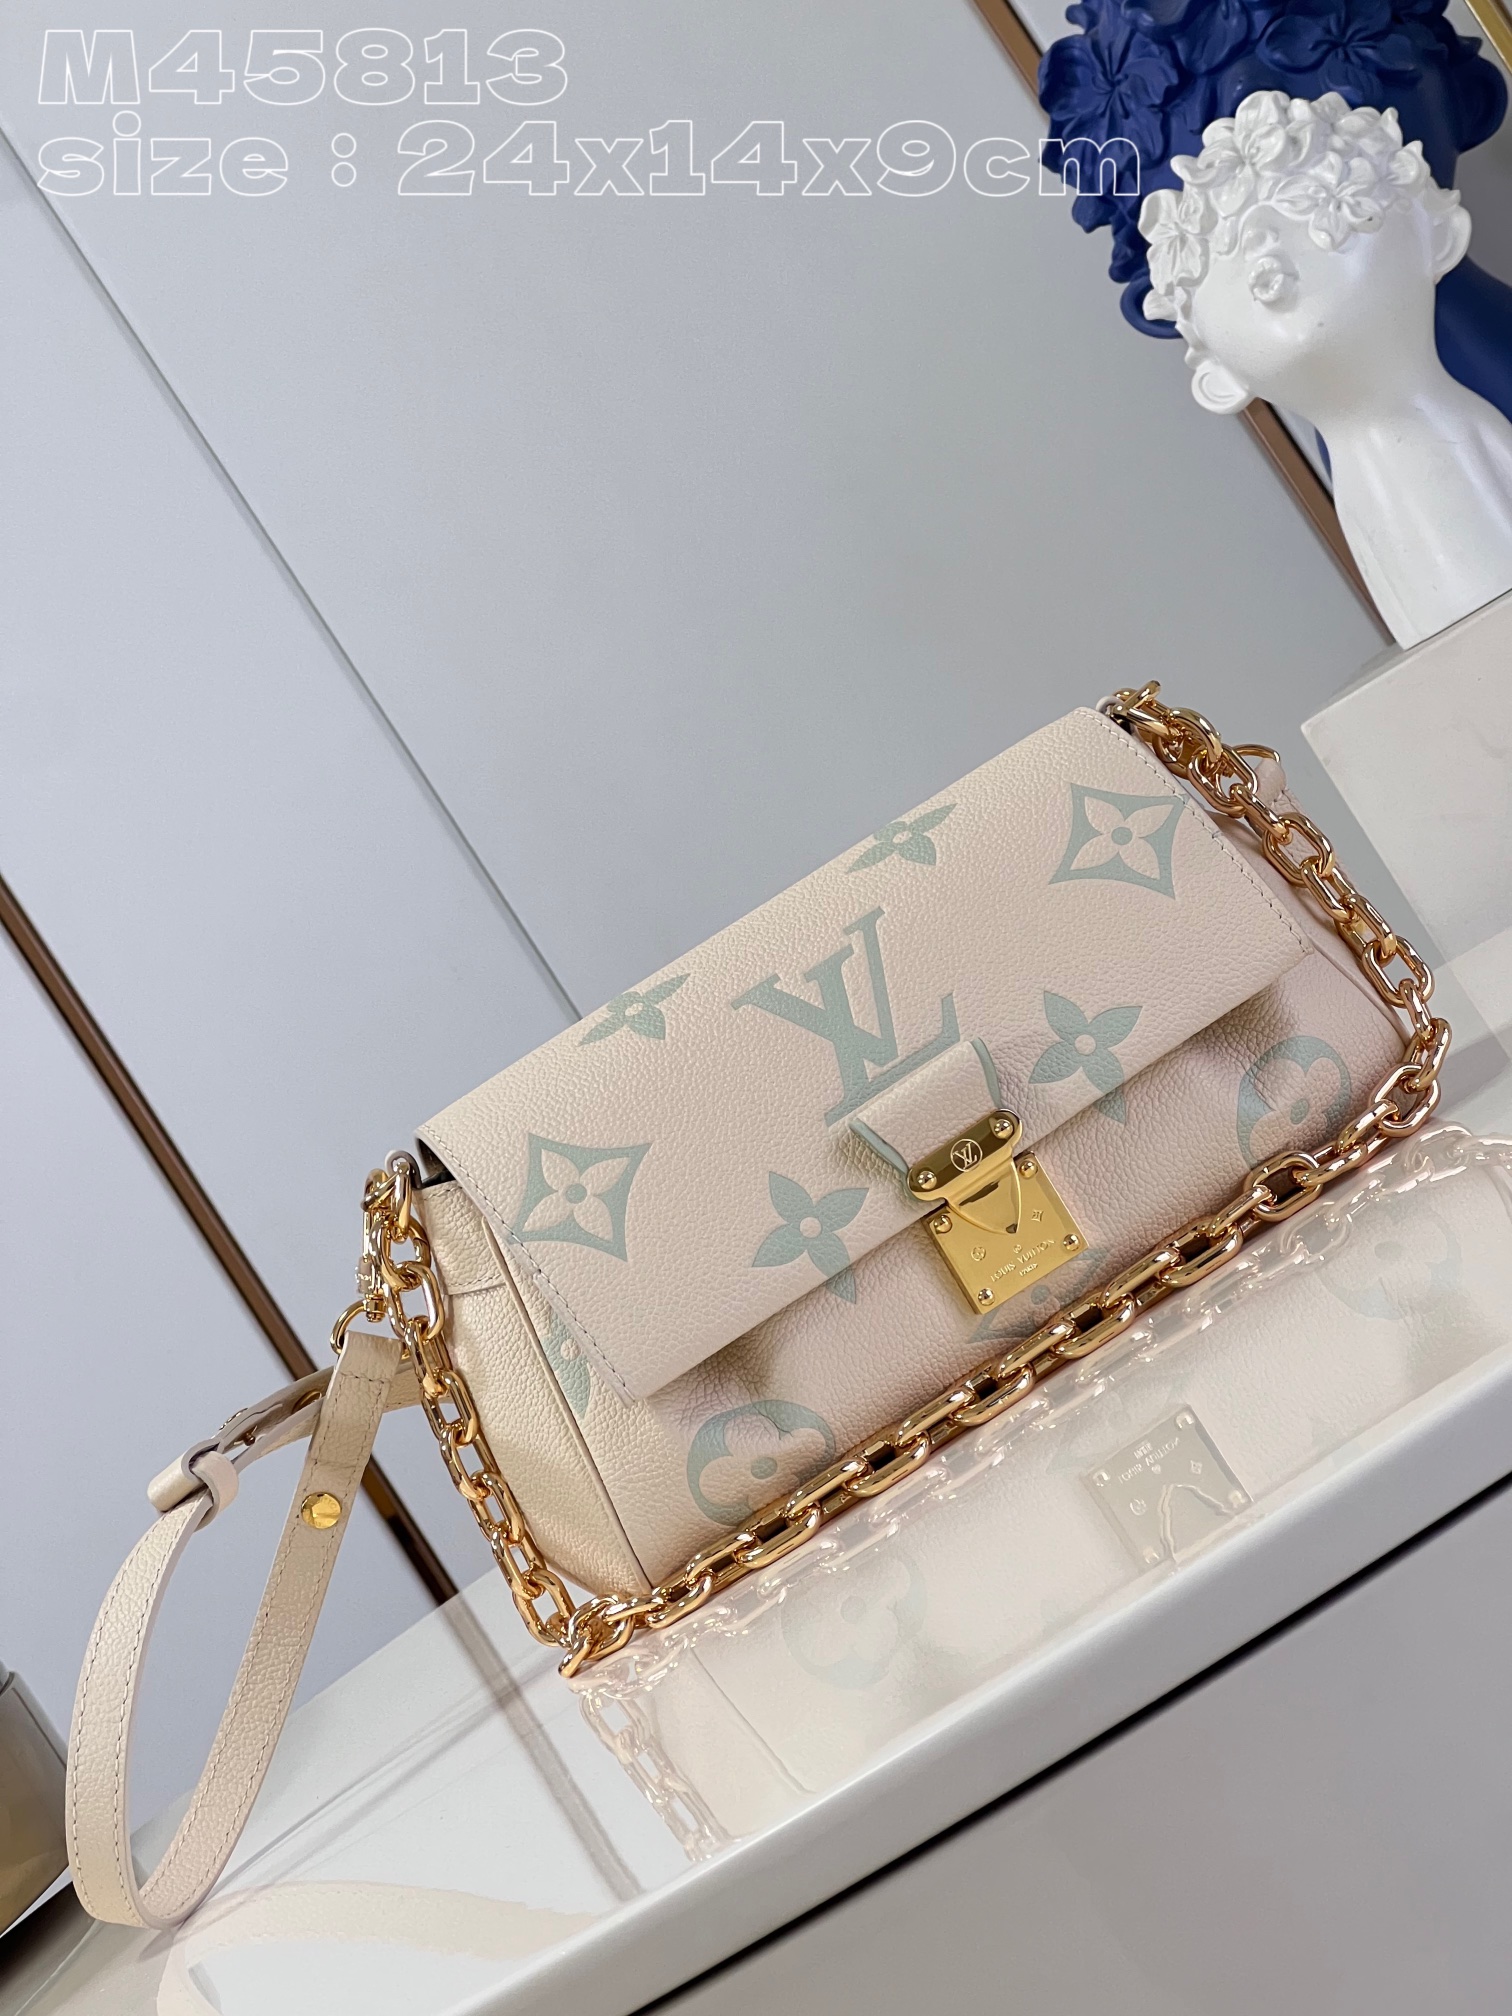 Louis Vuitton LV Favorite Bags Handbags Beige Green White Printing Empreinte​ Chains M45813